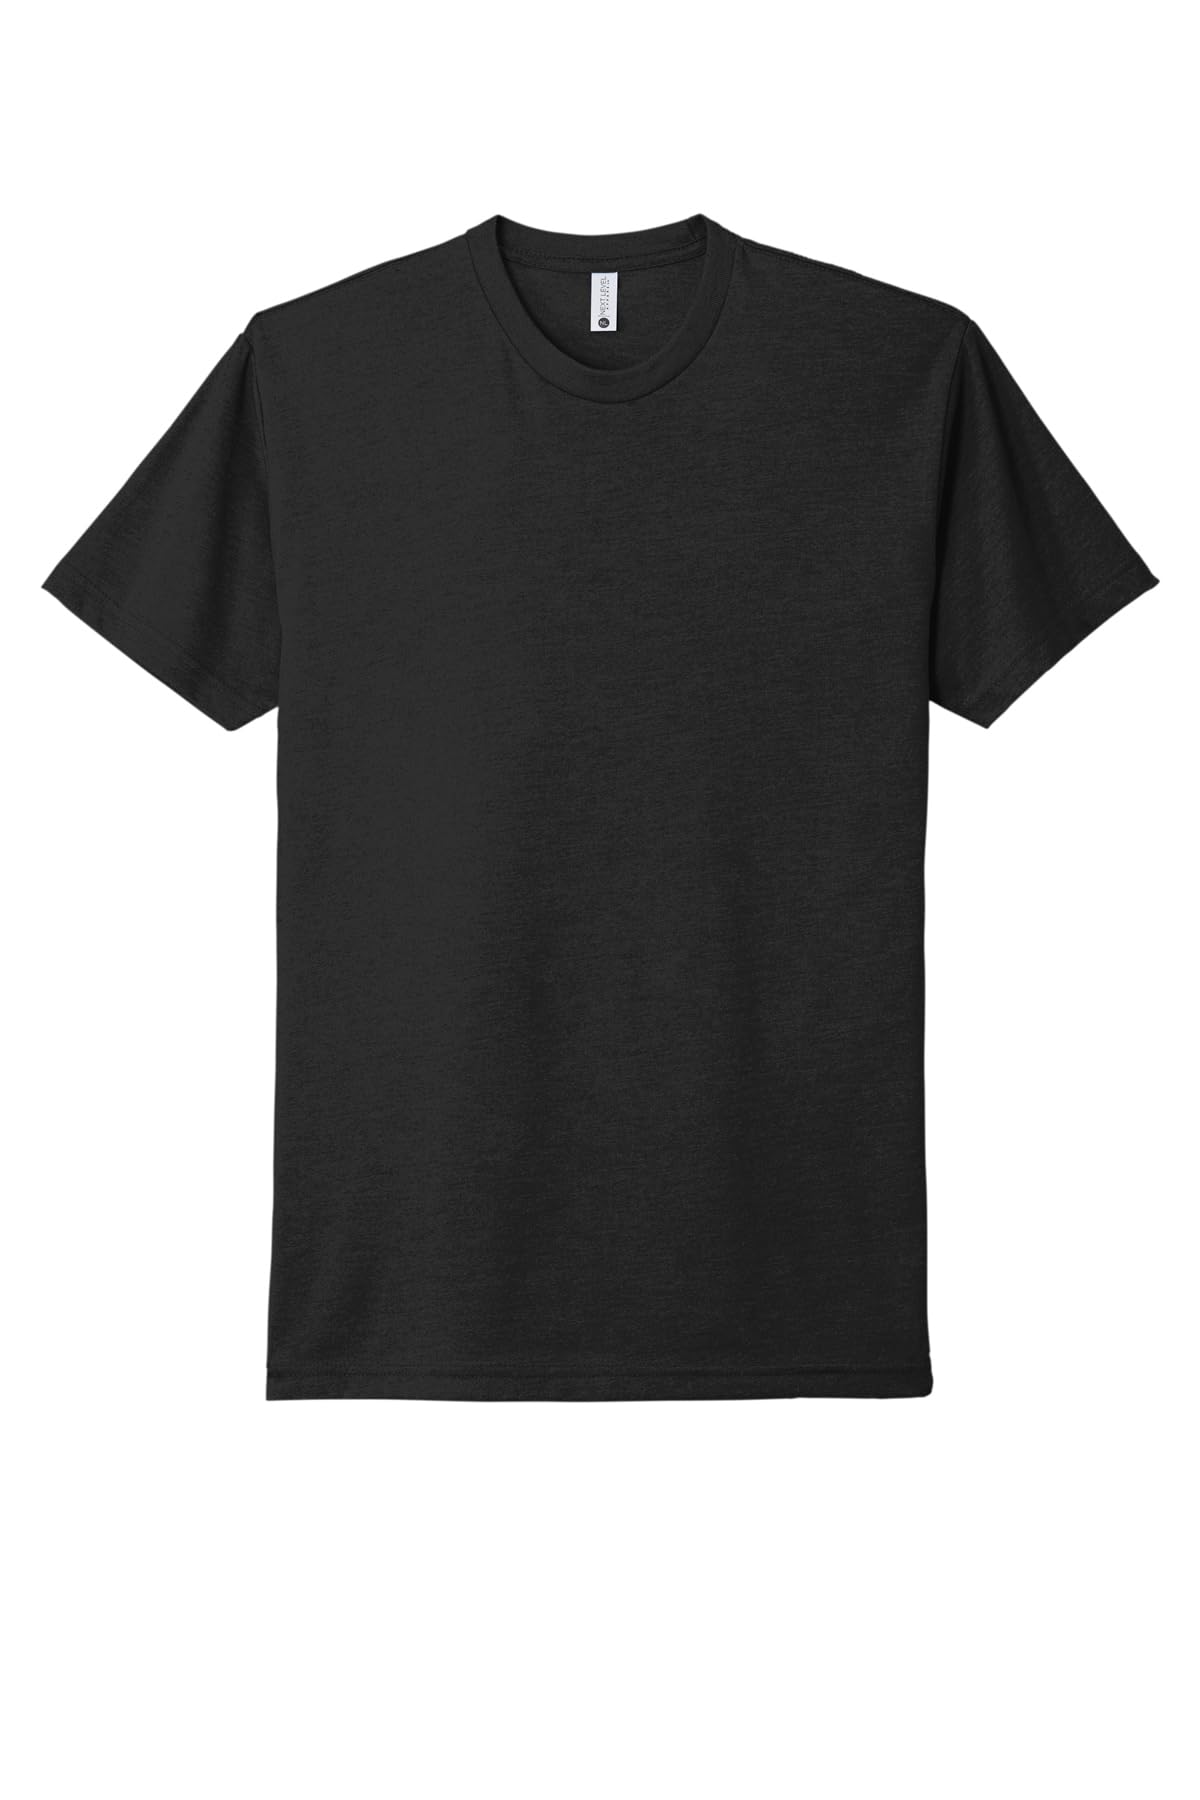 Next Level Men's Baby Rib Collar Premium CVC T-Shirt